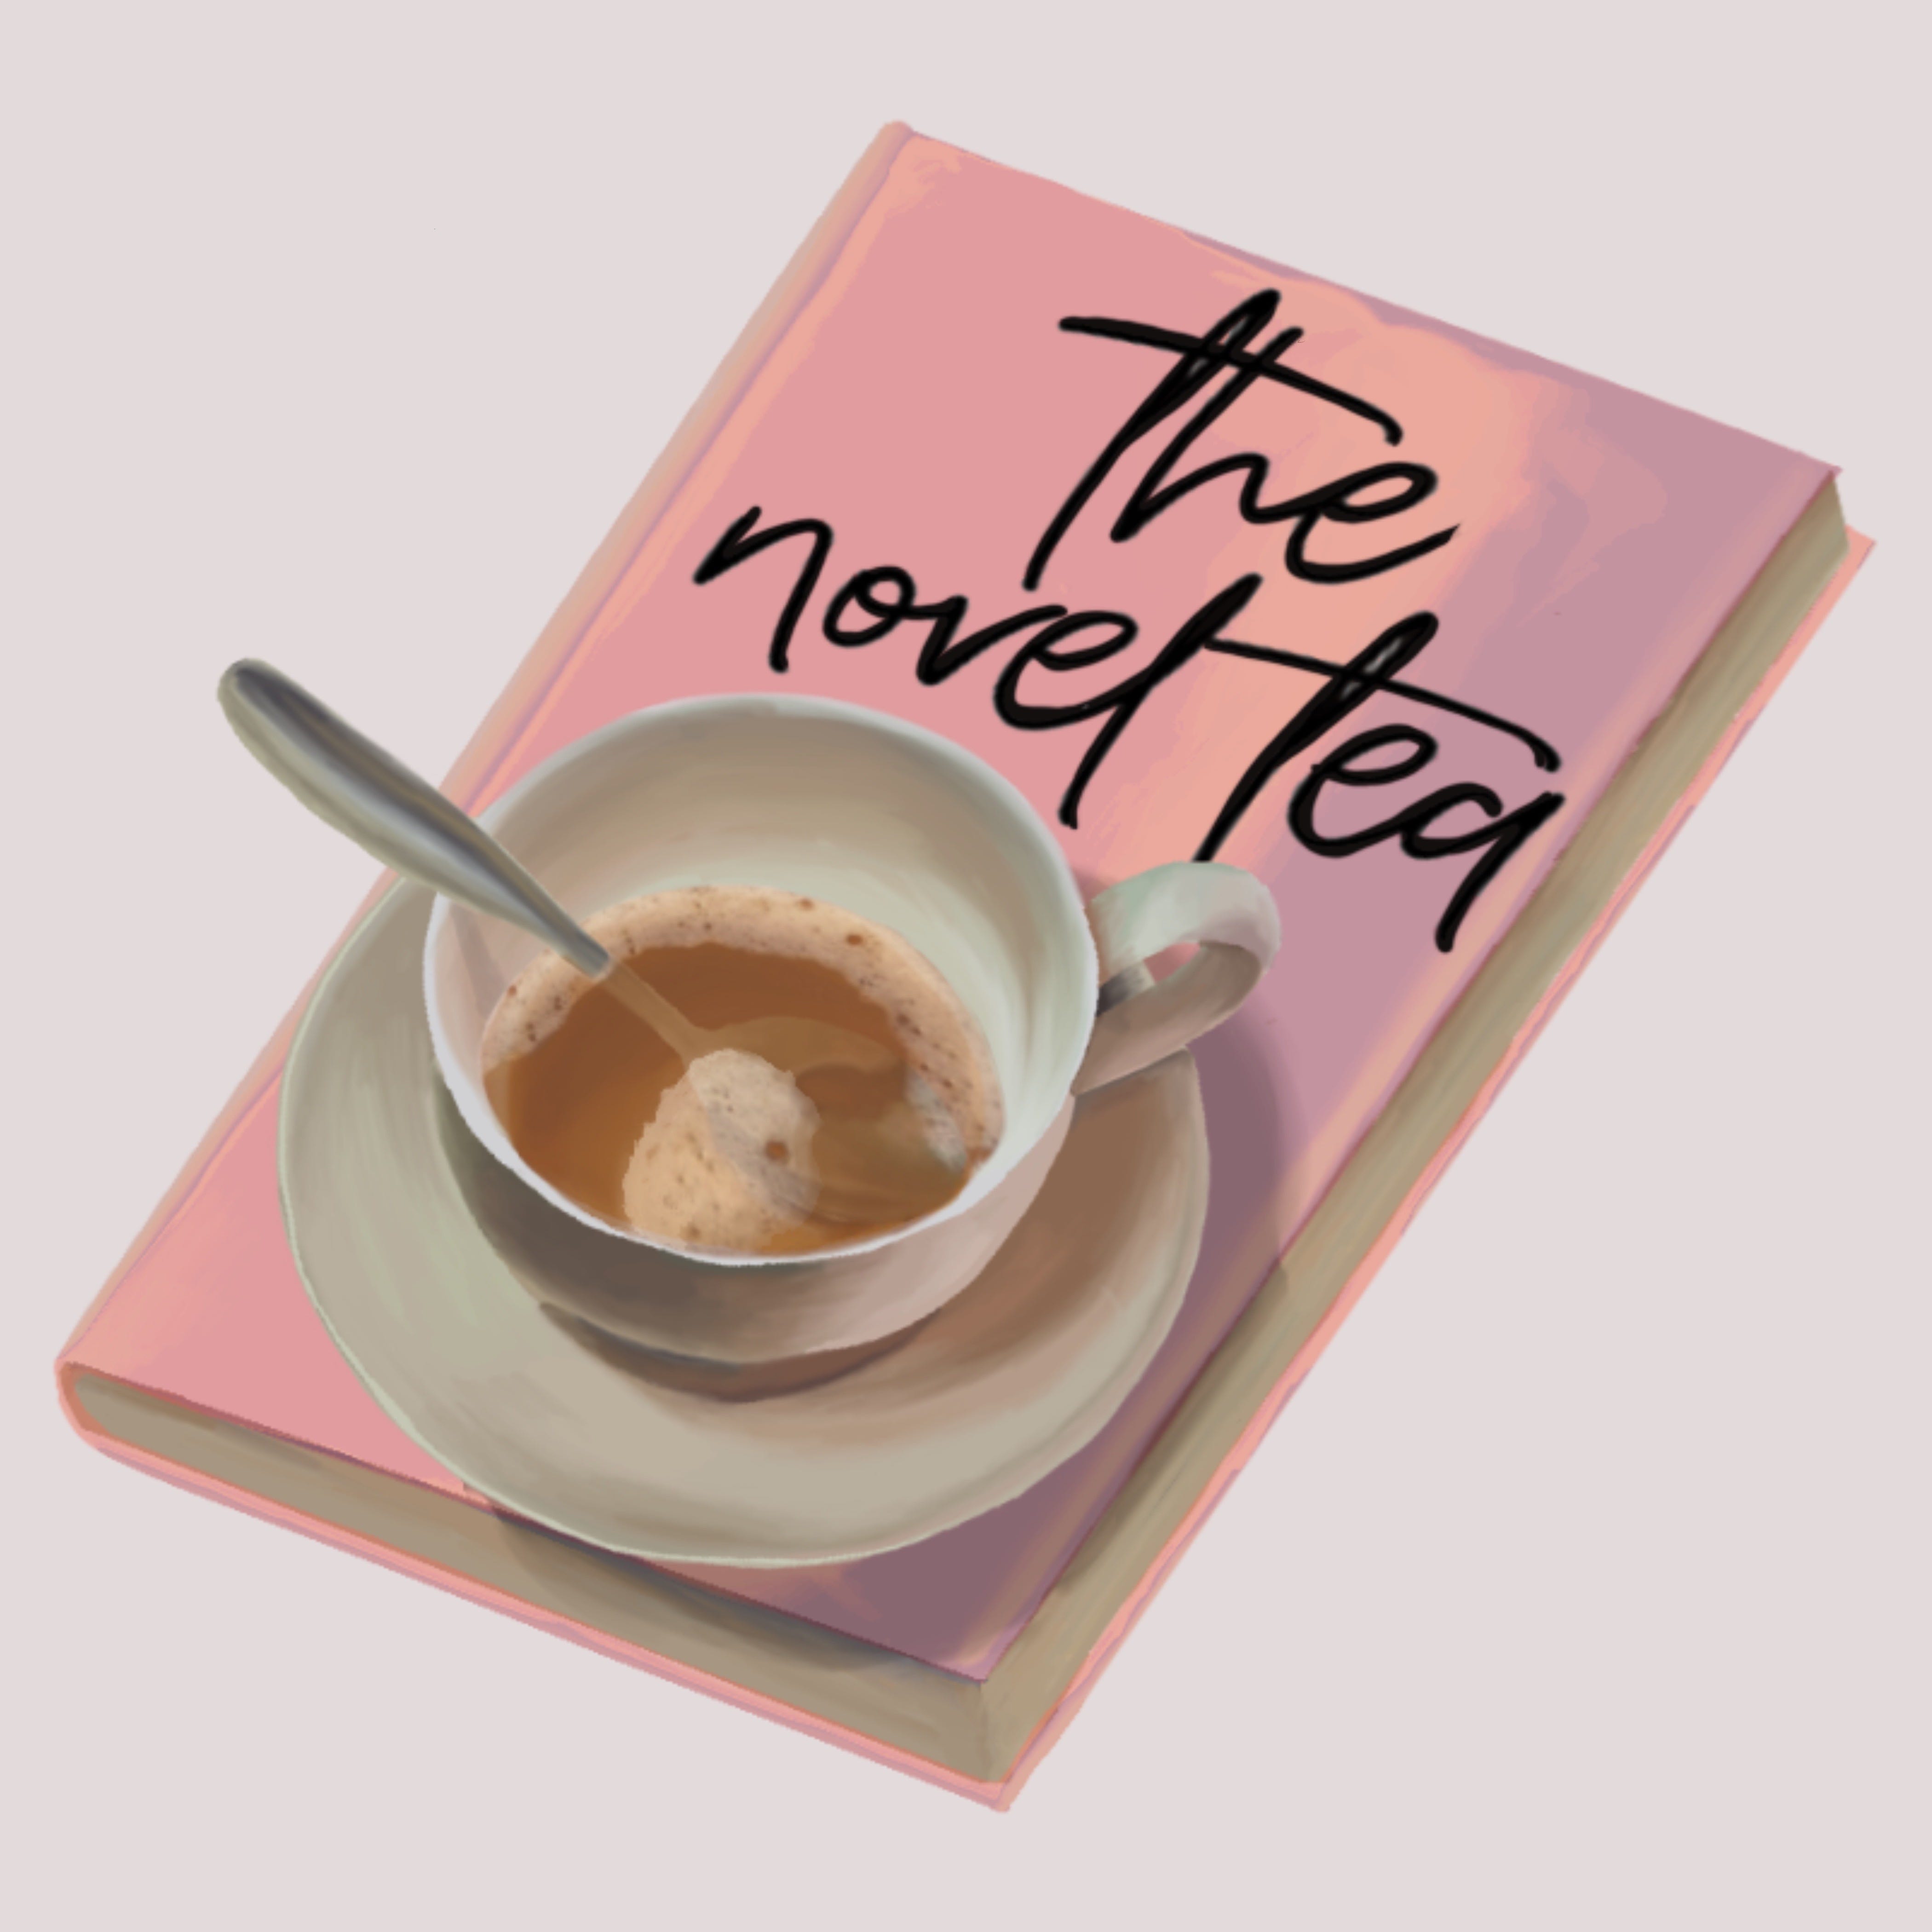 The Novel Tea Newsletter